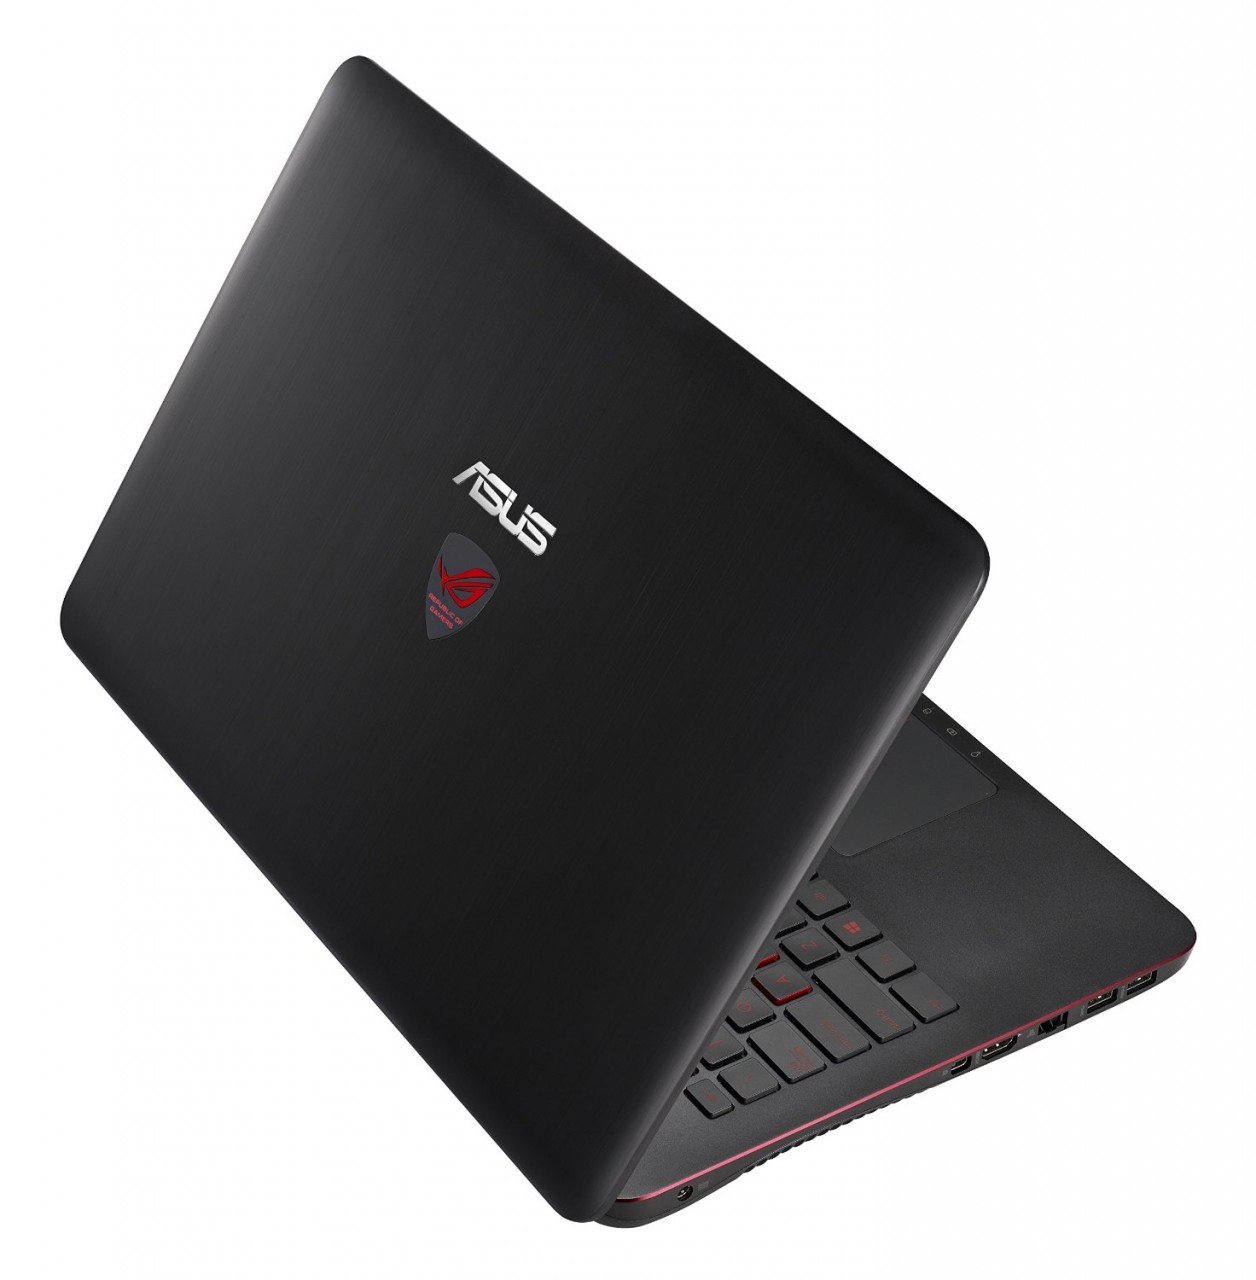 Asus Rog Gl552vw Fi485t 15 Inch Gaming Laptop